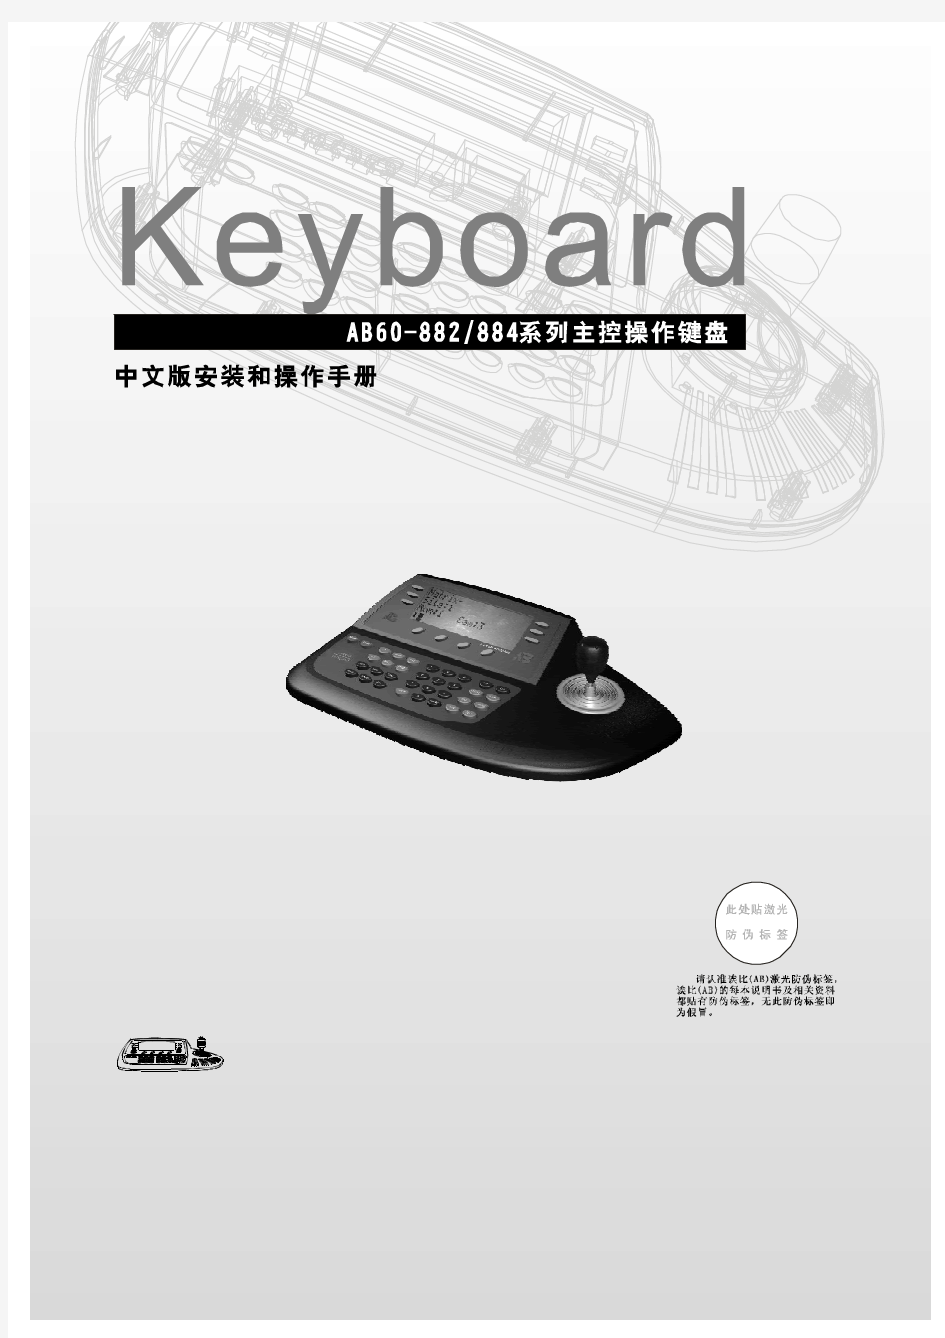 AB60-882、884系列主控操作键盘安装和操作手册